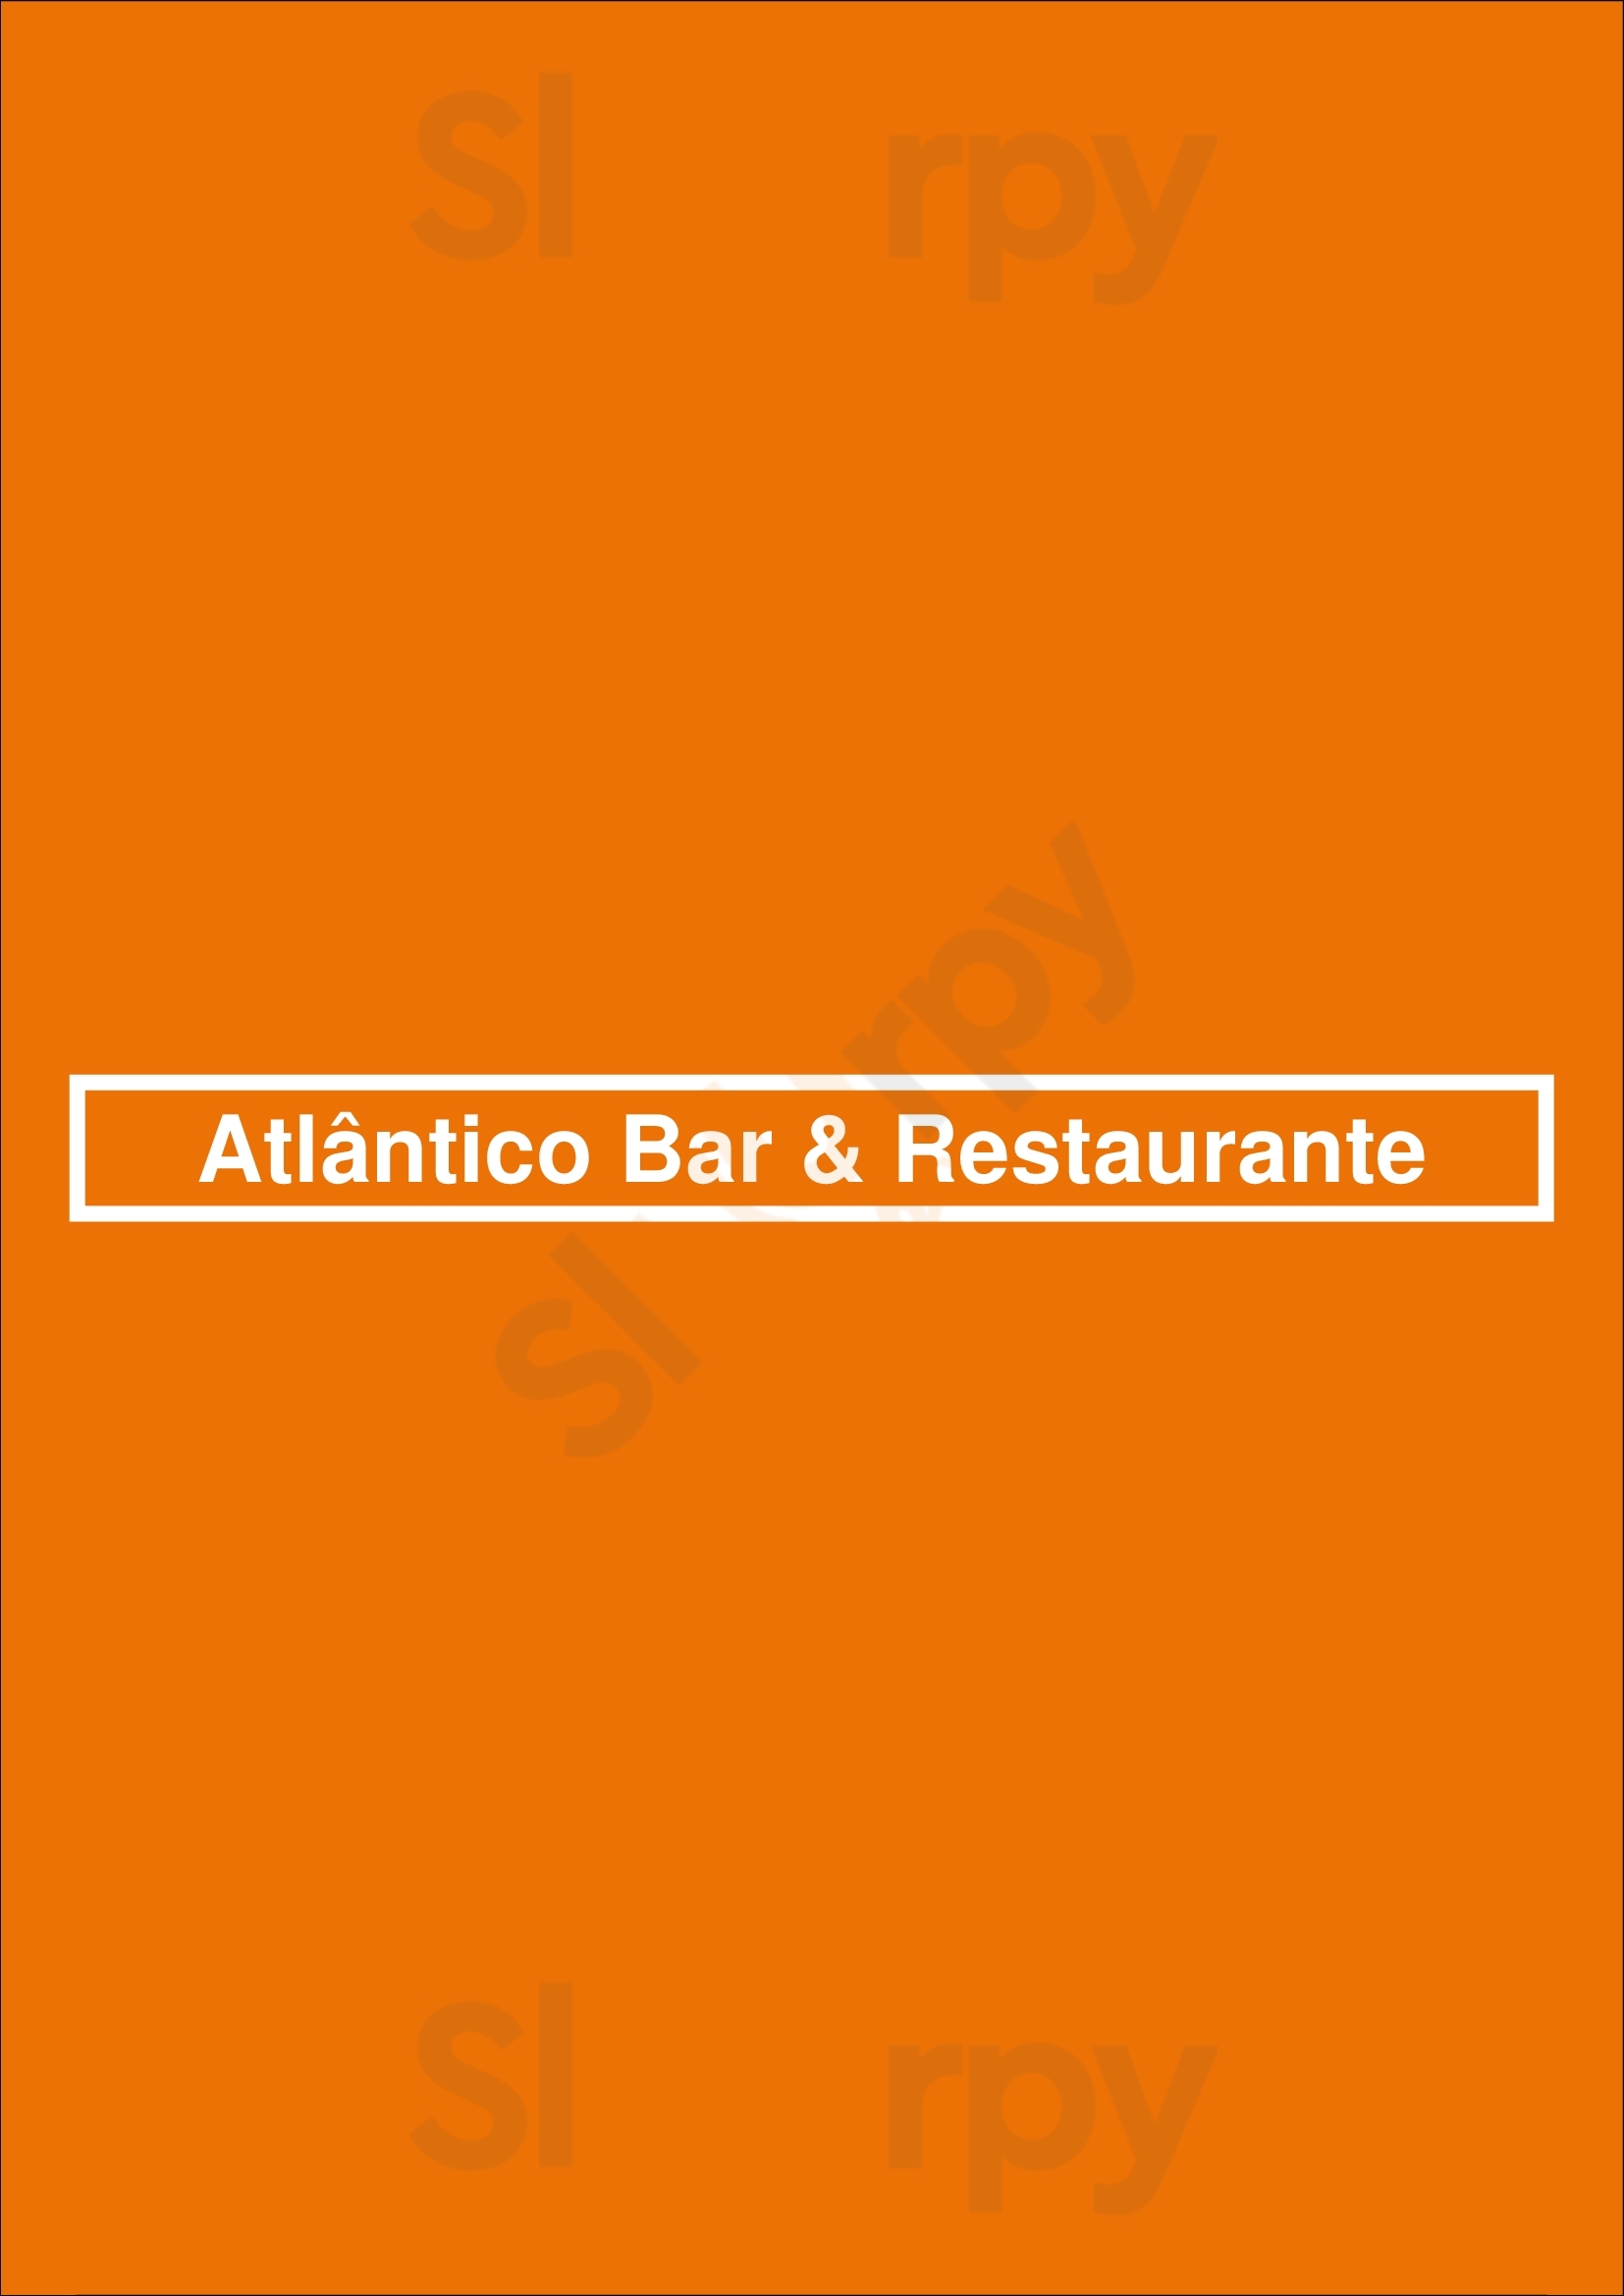 Atlântico Bar & Restaurante Estoril Menu - 1